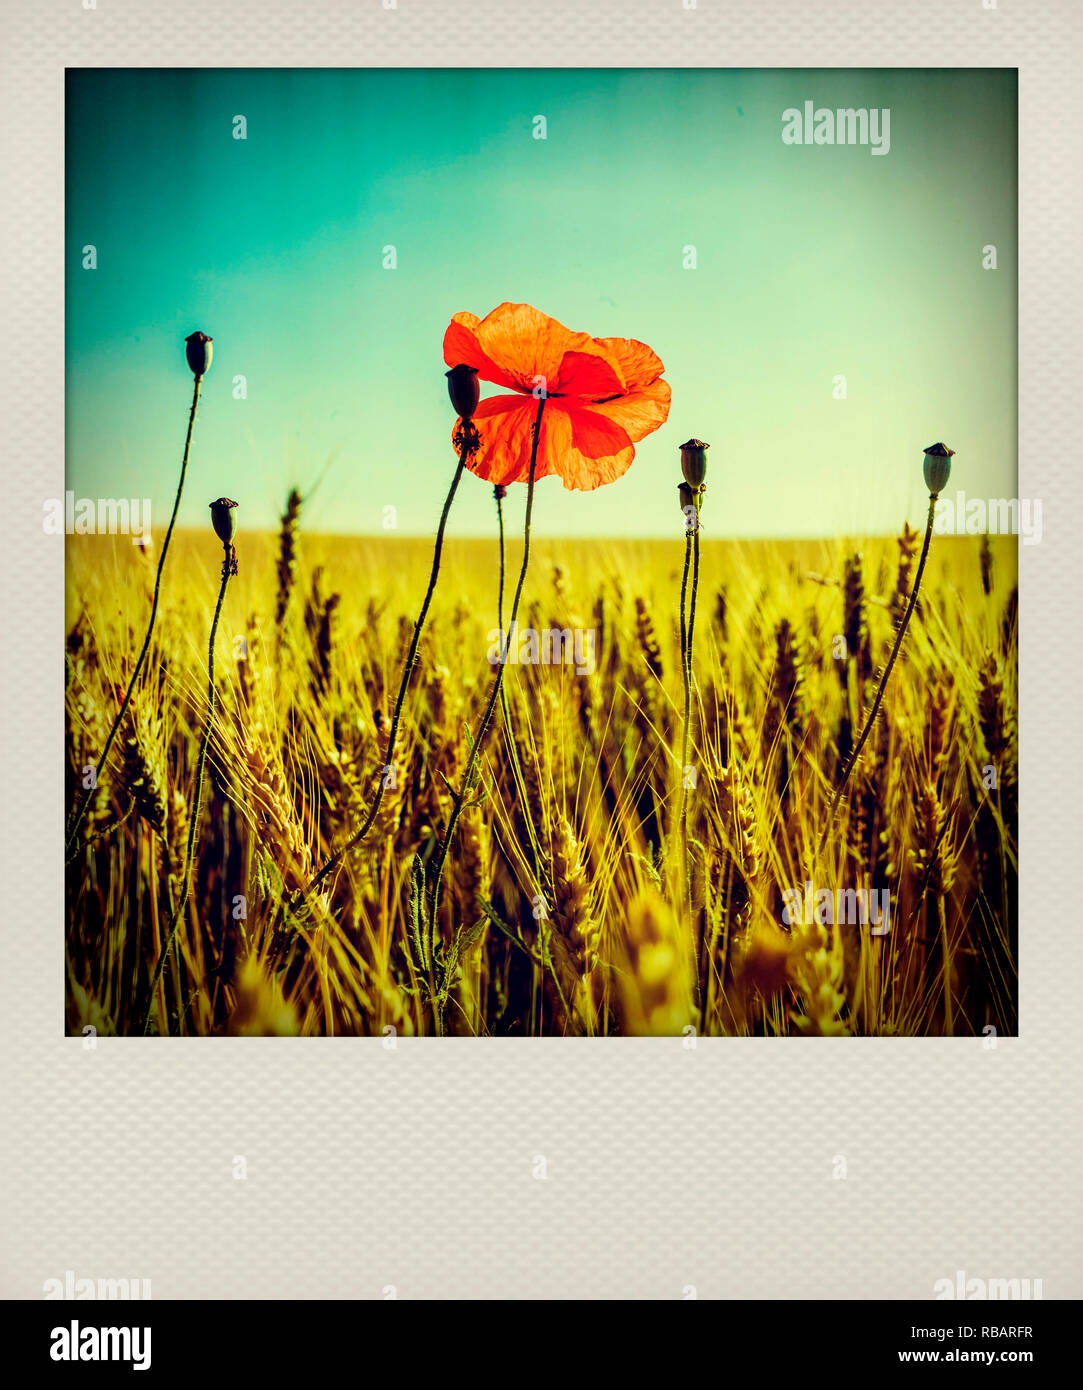 Effet Polaroid de coquelicot dans un champ de blé, France, Europe Banque D'Images